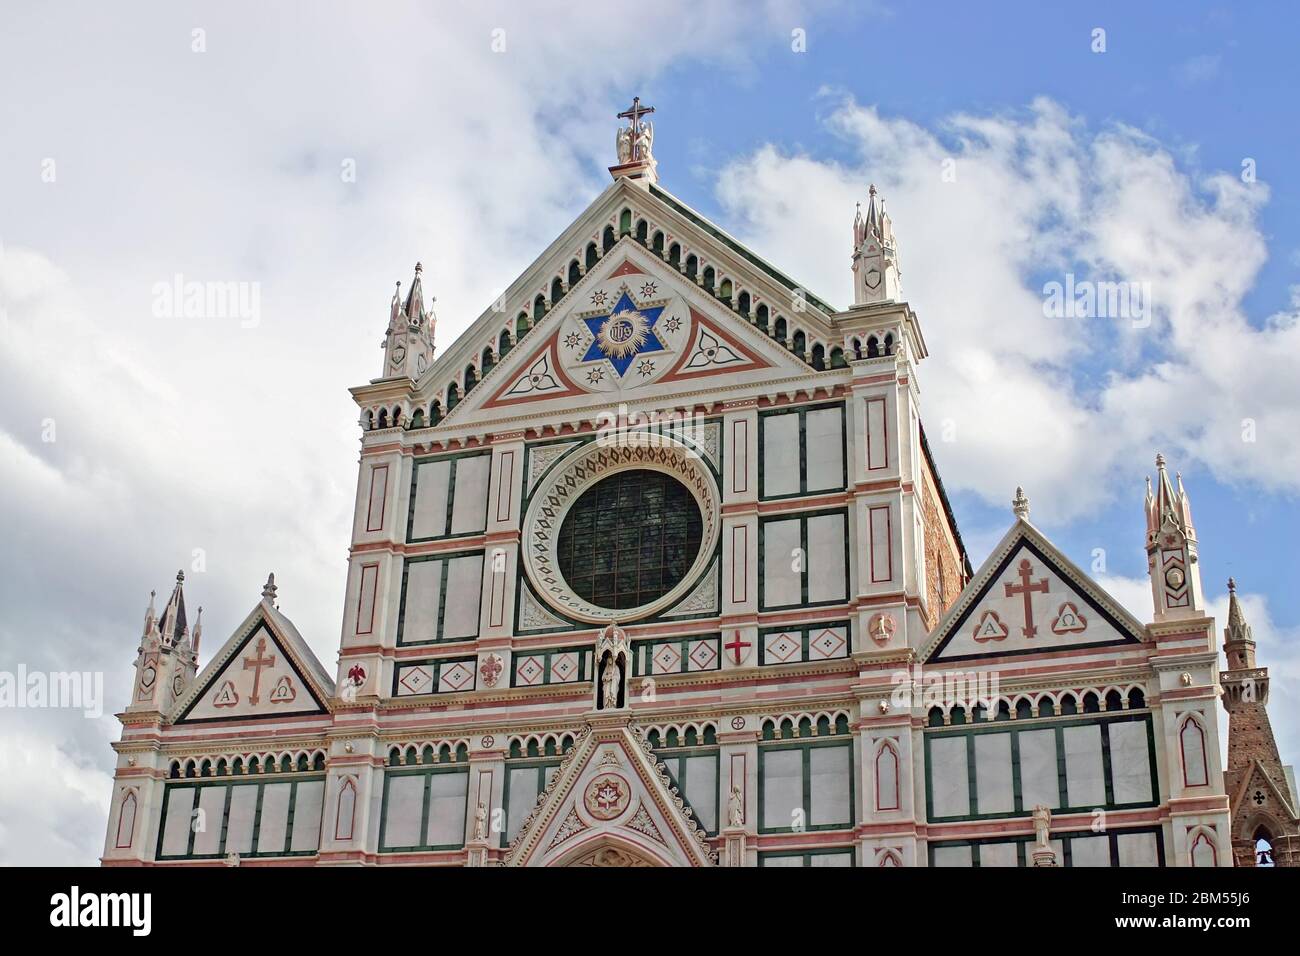 Cathedral Church Duomo basilica di santa maria del fiore in Florence, Italy Stock Photo